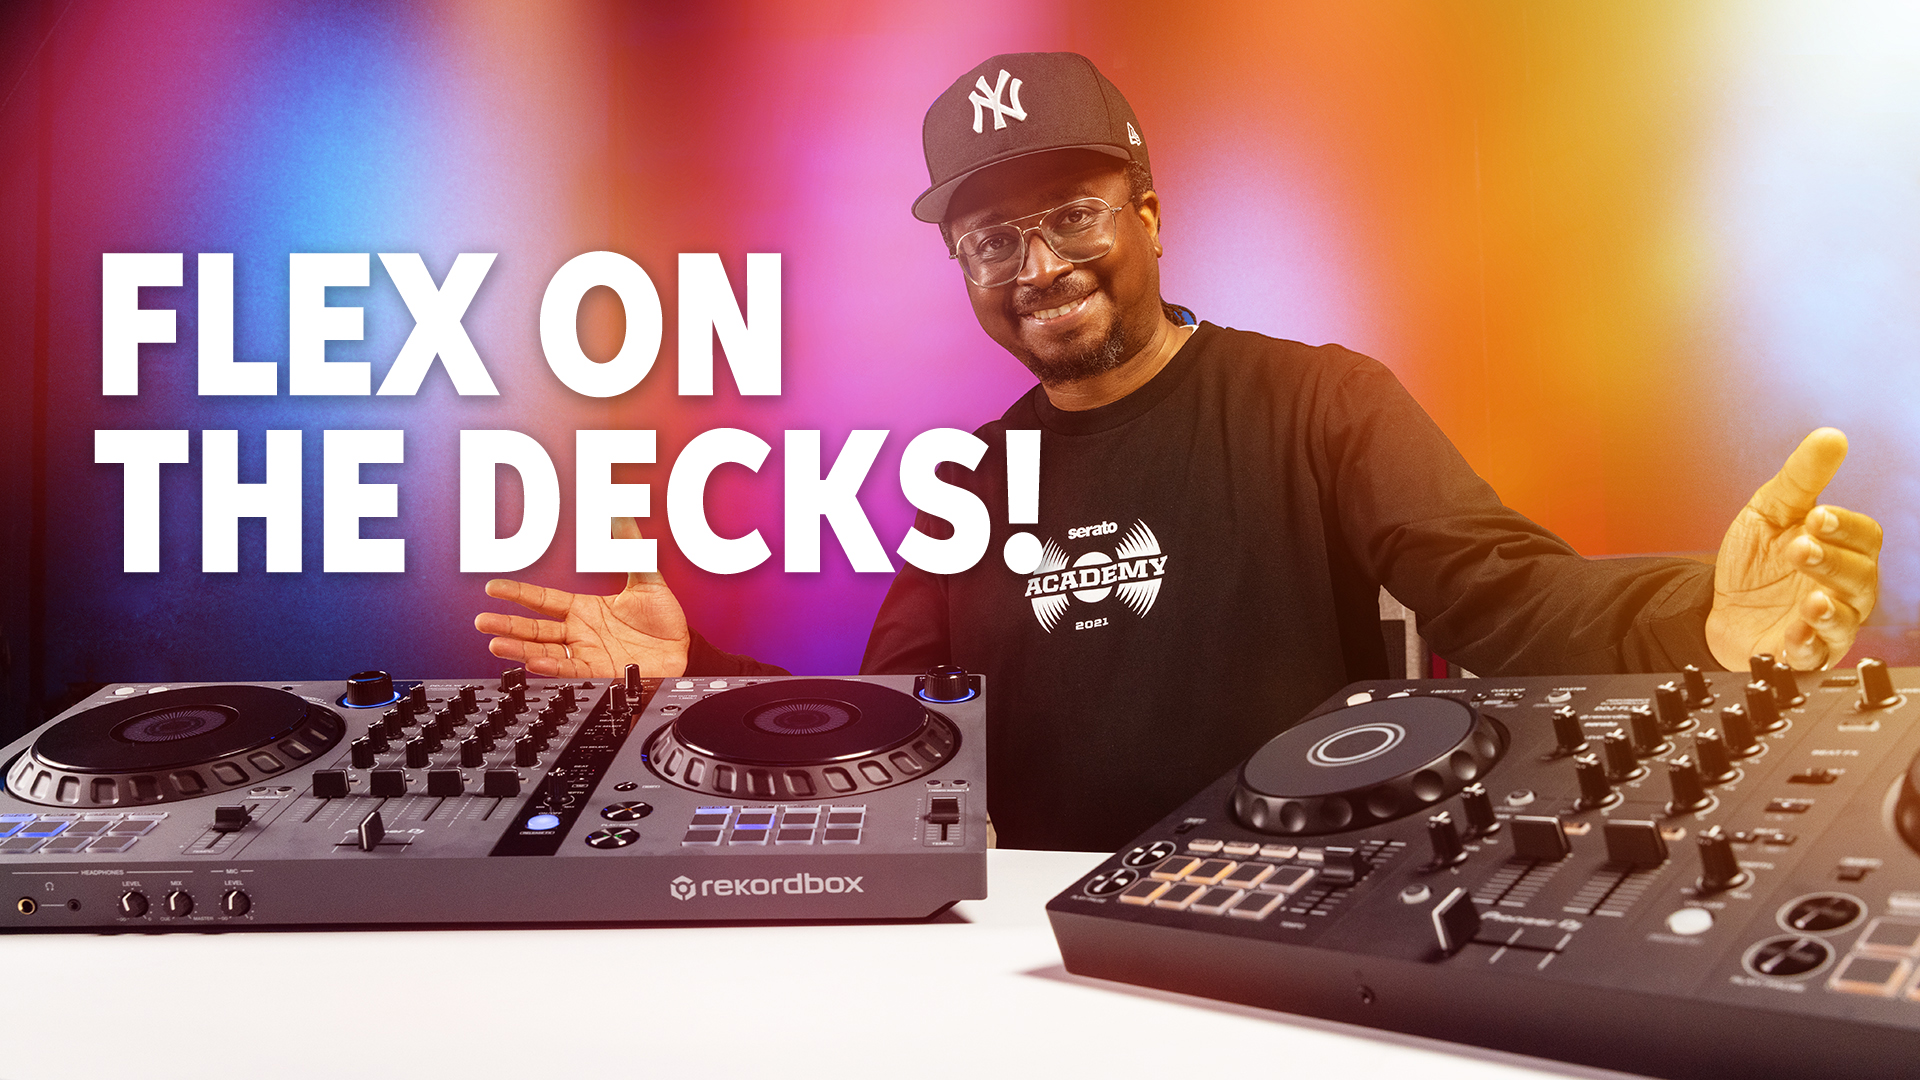 Pioneer DDJFLX4 2-Deck Rekordbox and Serato DJ Controller - Graphite